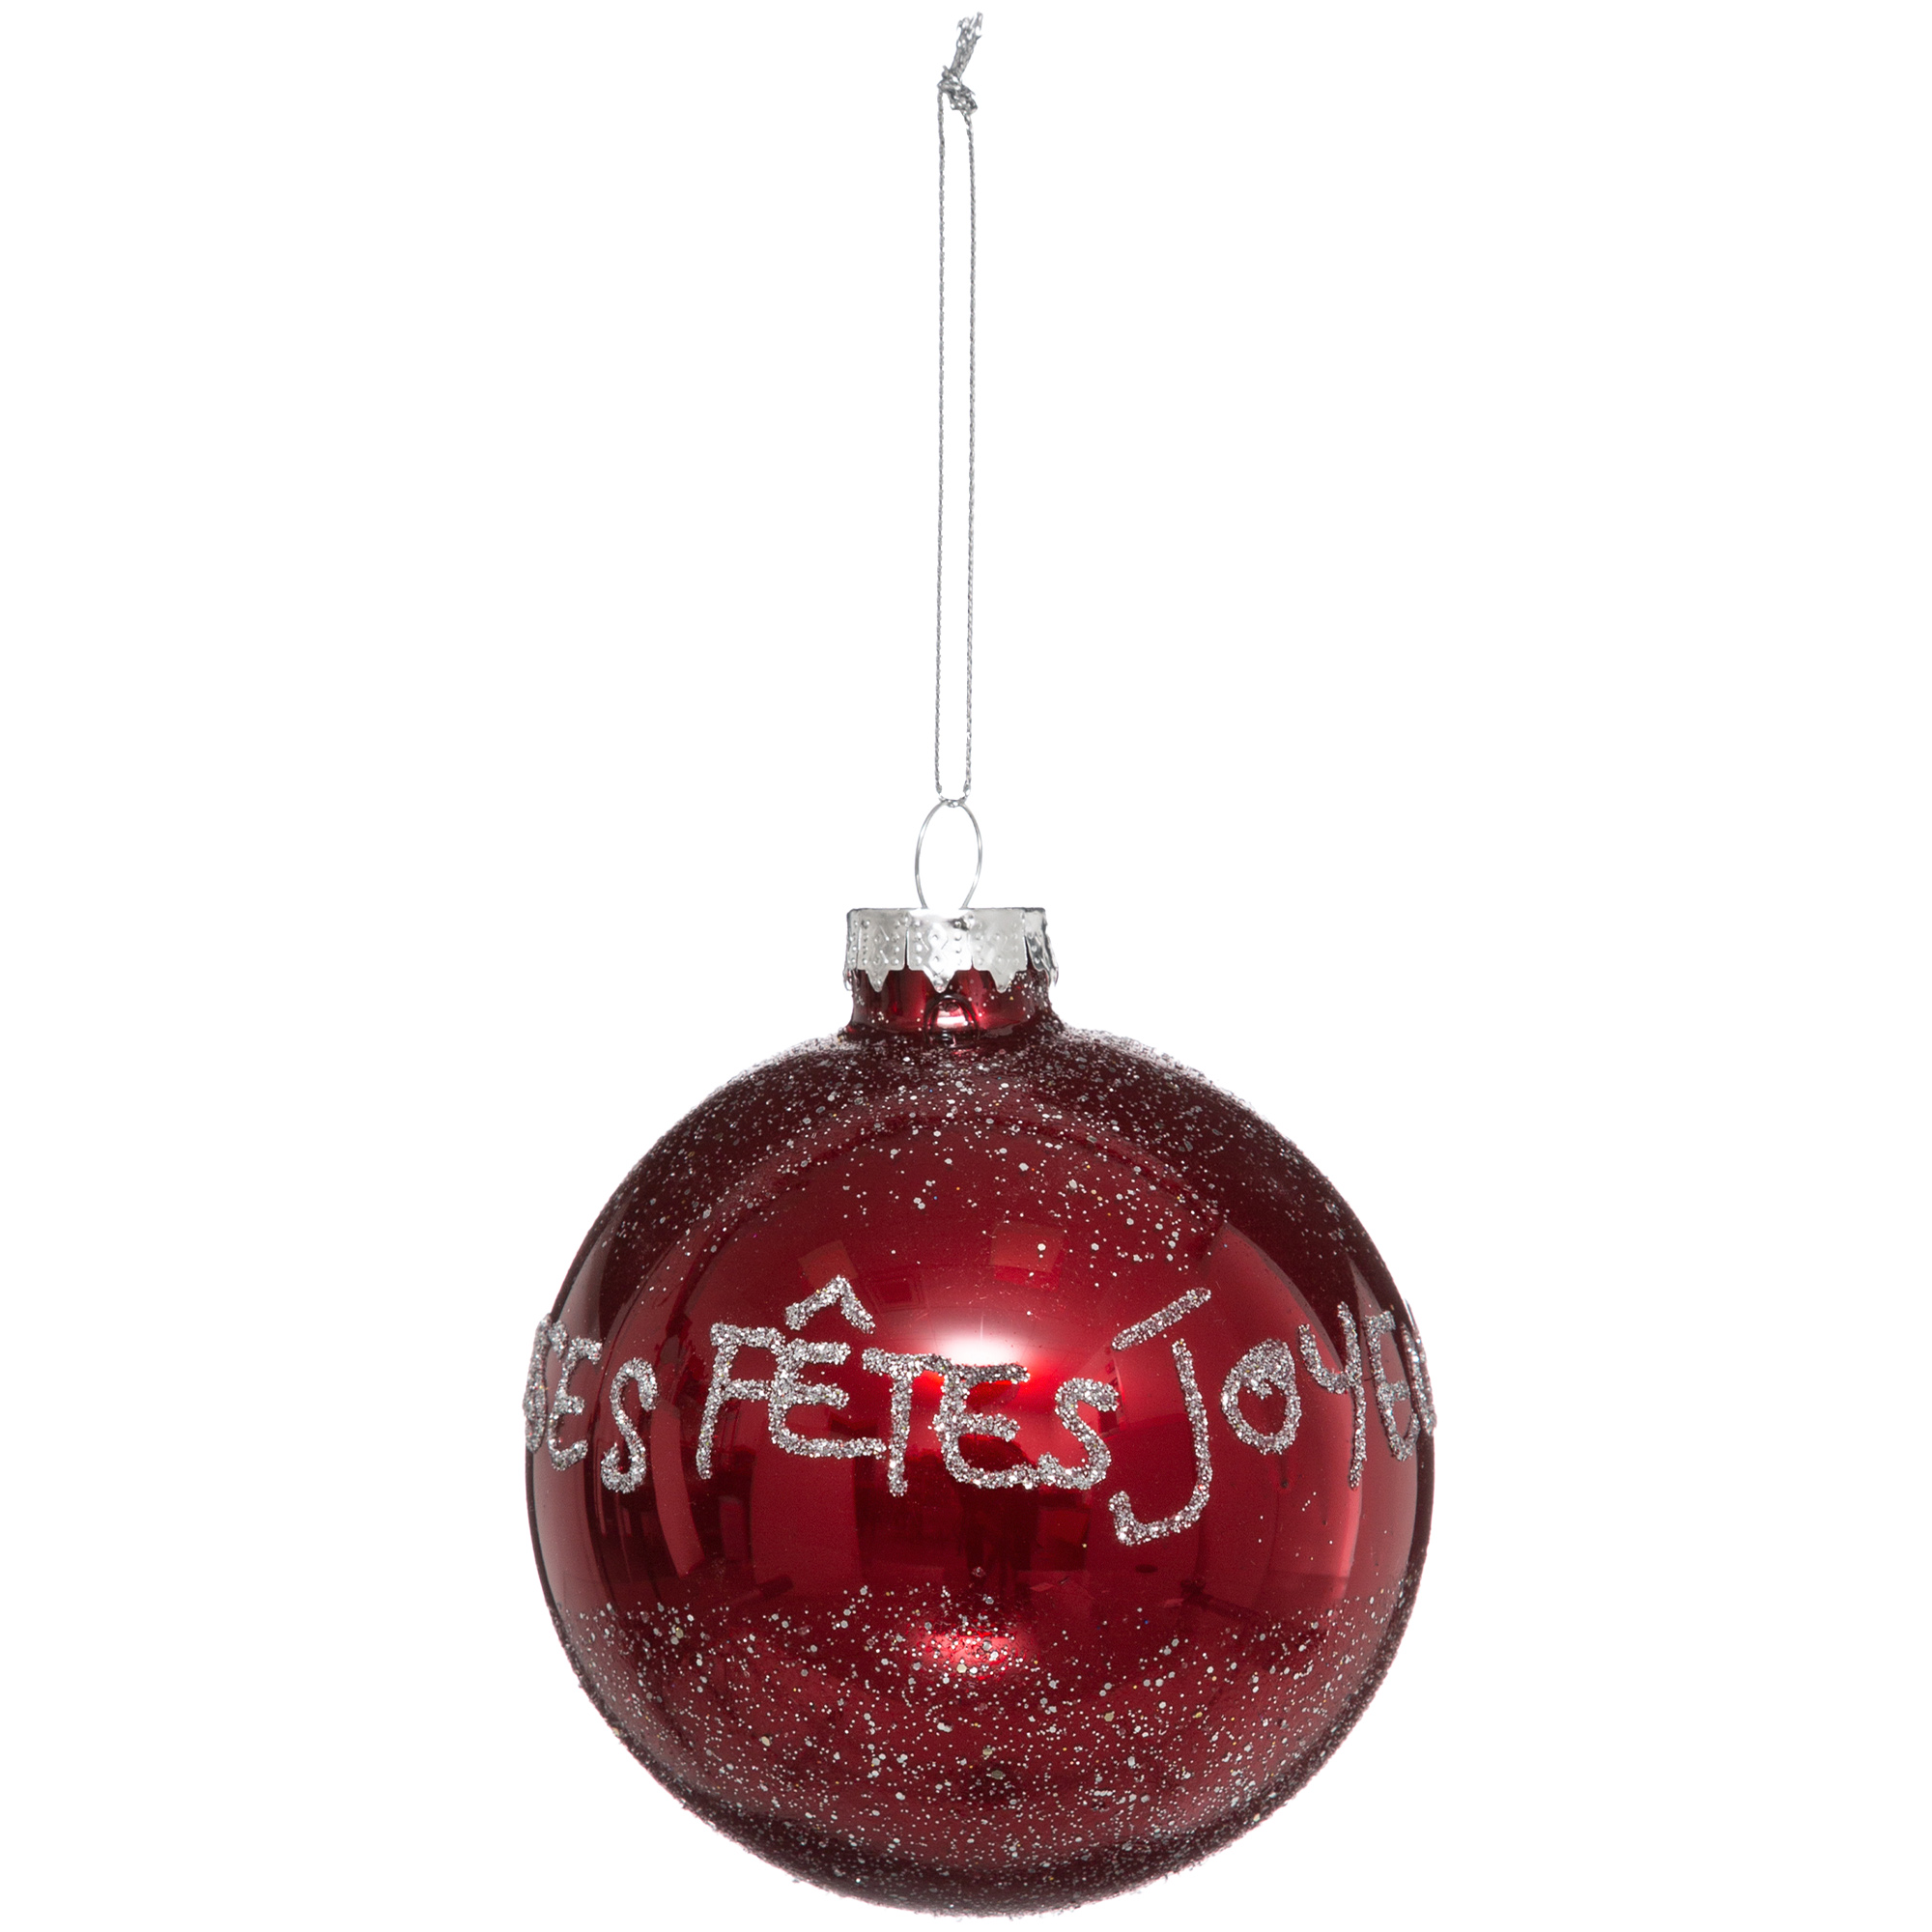 Atmosphera - Atmosphera Bola de Navidad Vidrio Roja 90mm Impresa - Decoración Navideña Elegante y Adaptable